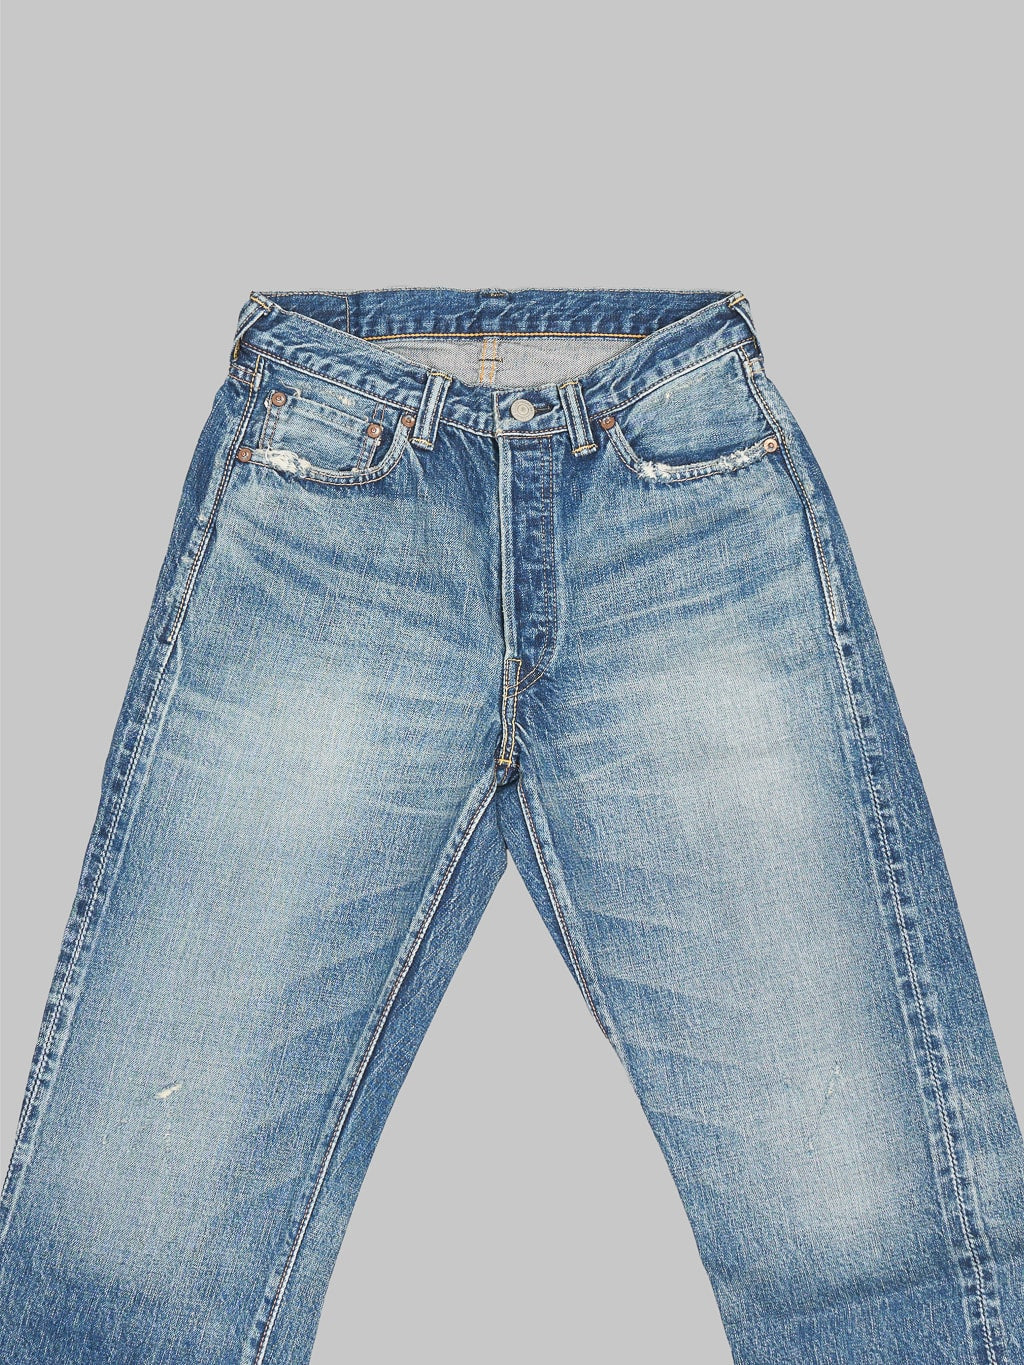 Fullcount 1101 Dartford wide Straight Jeans waist